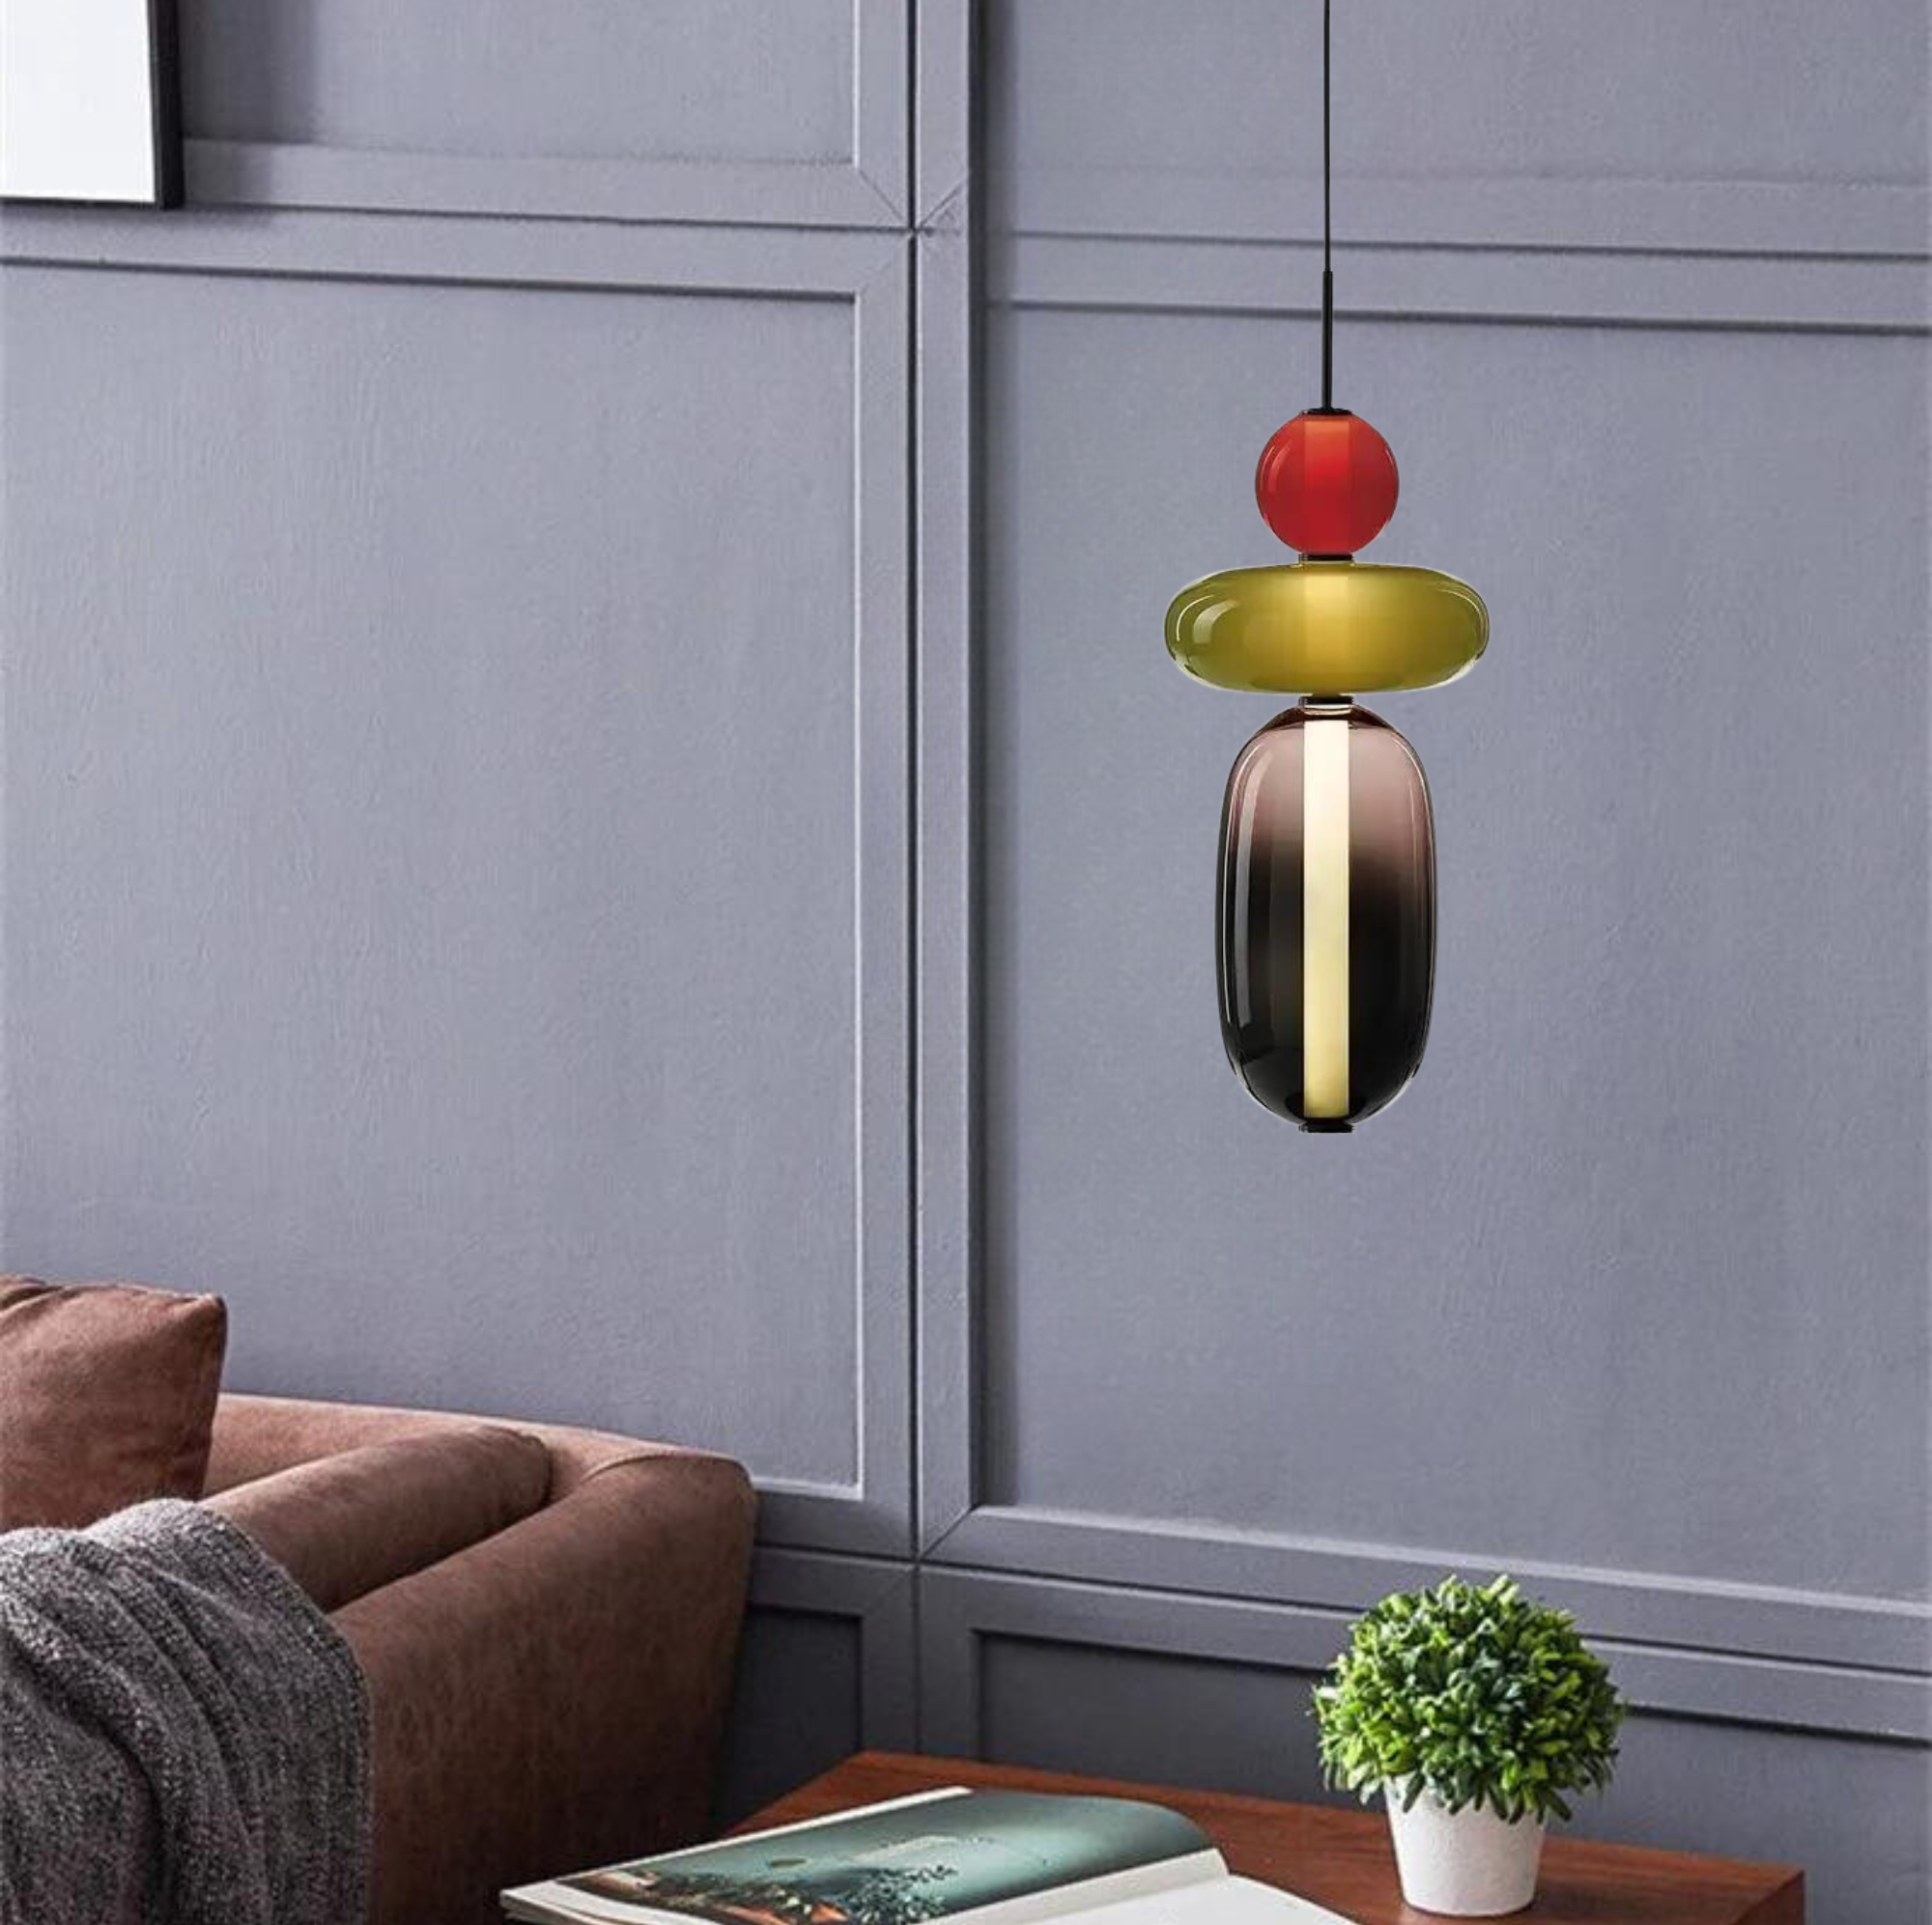 MD3202-B Premium Glass pendant LED ceiling light Nordic Color Glass modern design, indoor decorative lighting, for Bedroom, Bedside, Bar, Cafe, Restaurant (Single Piece)